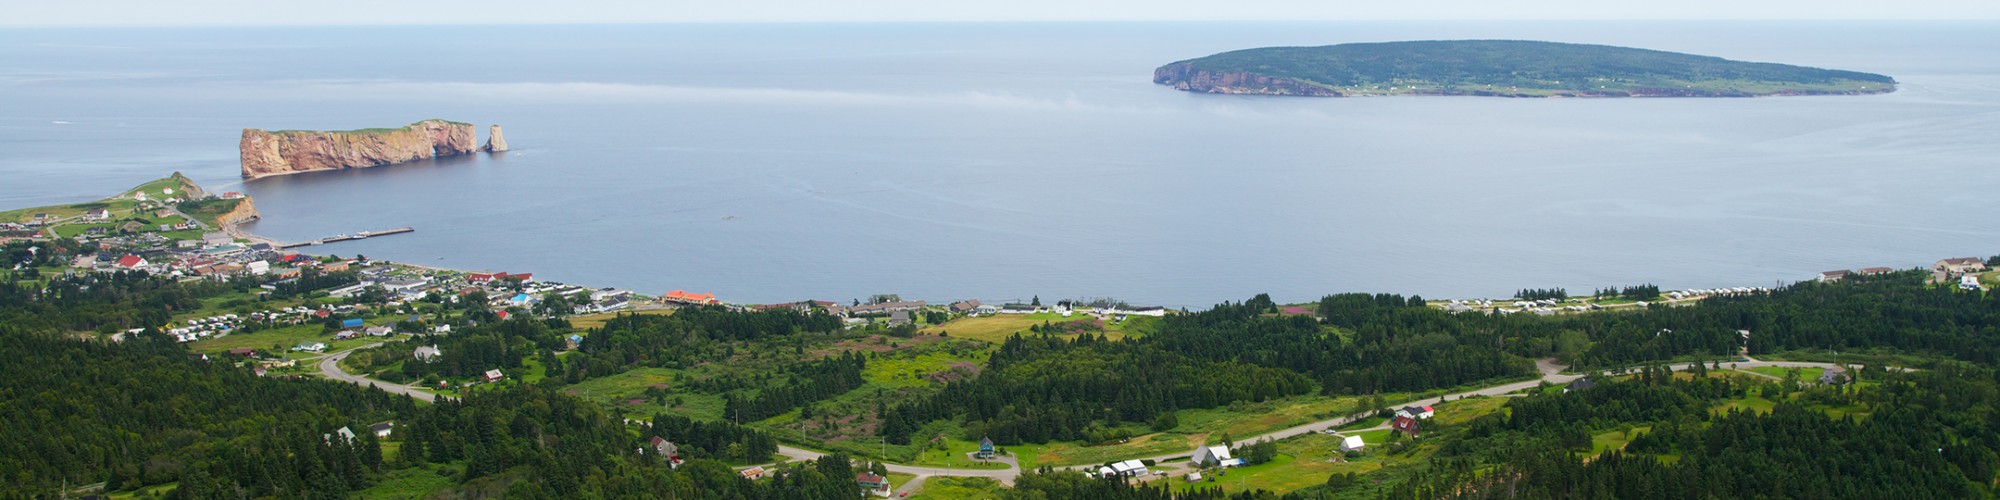 Aerial view, landscape, Percé Rock